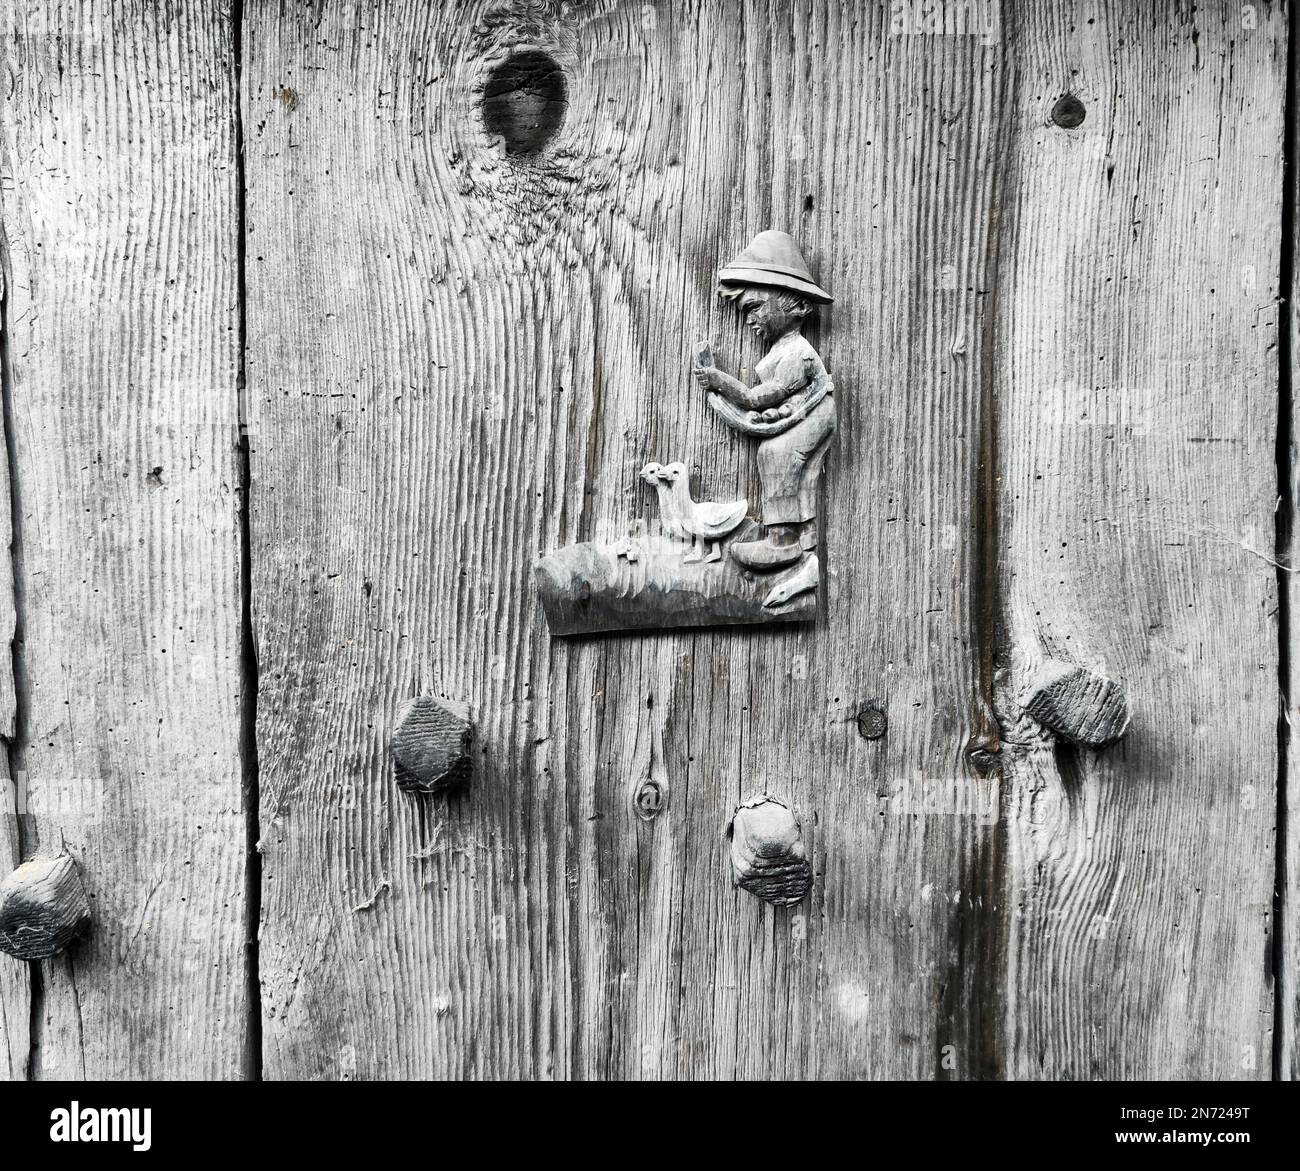 Ein kleiner Junge, in Holzgänse geschnitzt, Plastikfigur auf einer Planktür im Ulten-Tal, Südtirol Stockfoto